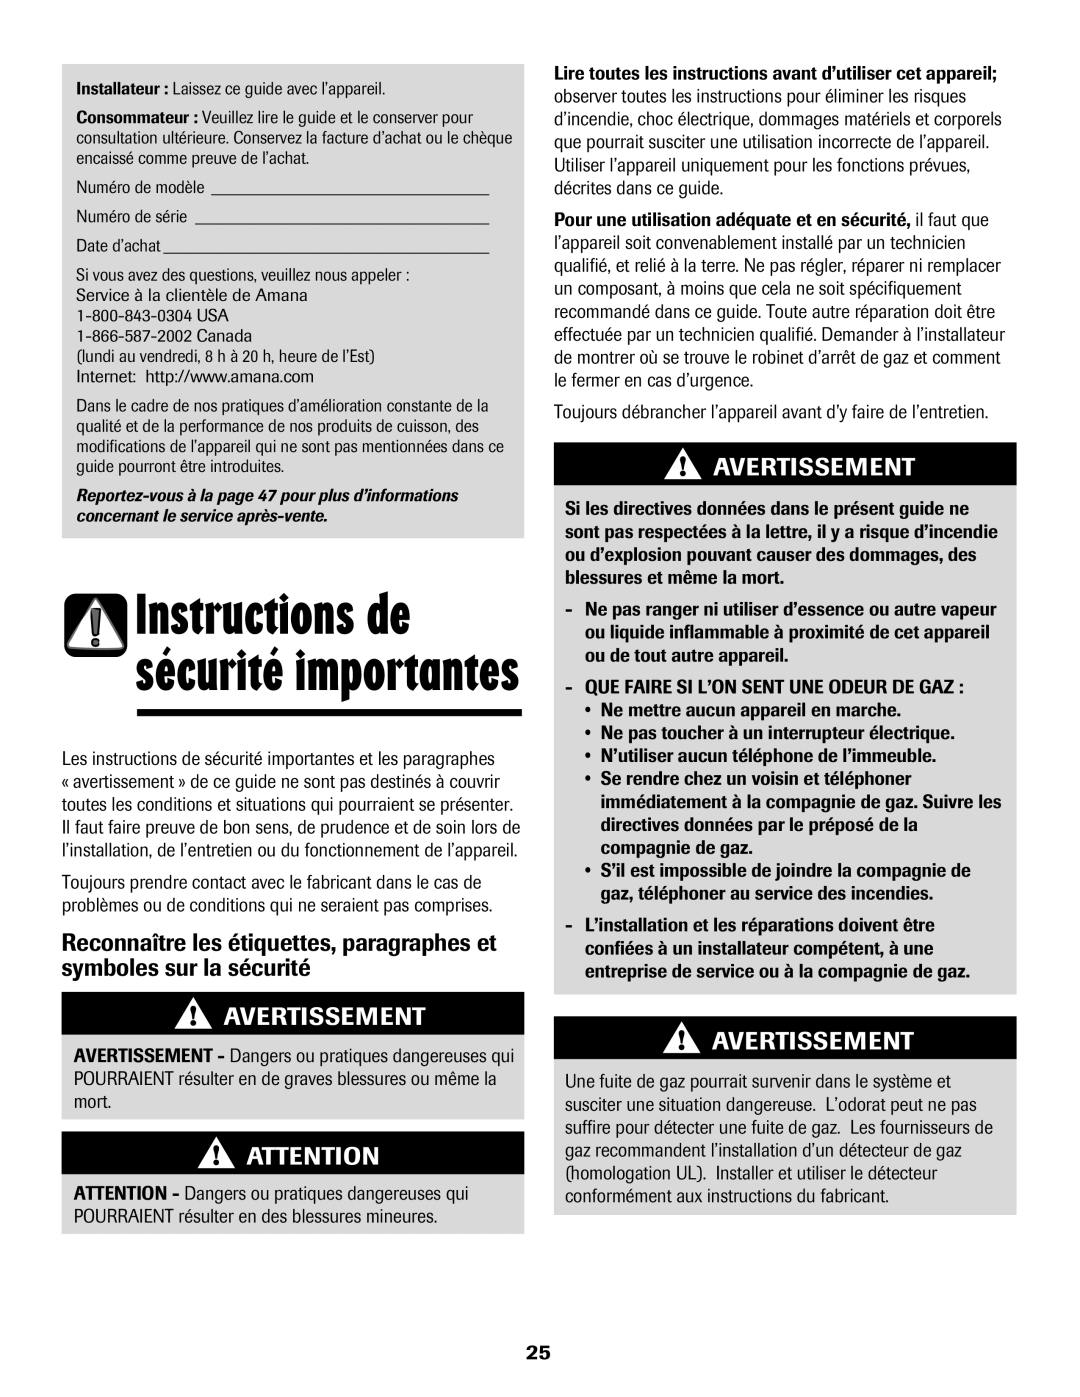 Amana 500 manual Avertissement, Instructions de sécurité importantes 